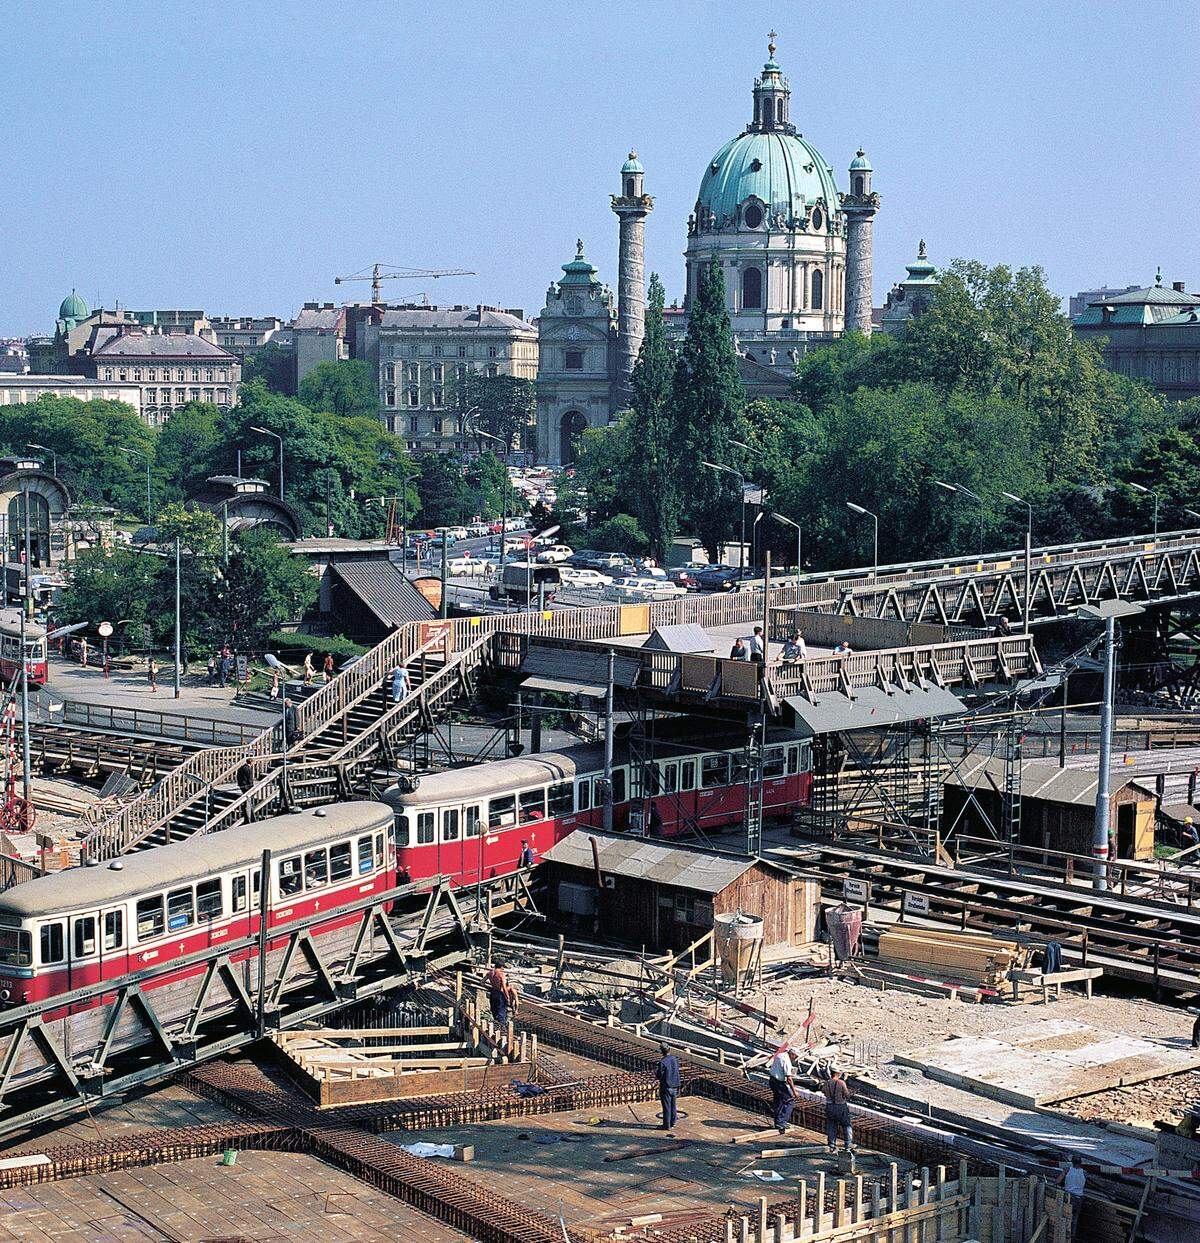 Der Bau brachte für mehrere Jahre unter anderem Löcher für das Stadtbild. Über die Großbaustelle am Karlsplatz führte ein Fußgängerübergang samt Aussichtsplattform, die von den Wienern in Anspielung auf Bürgermeister Bruno Marek scherzhaft "Marek-Loge" genannt wurde.